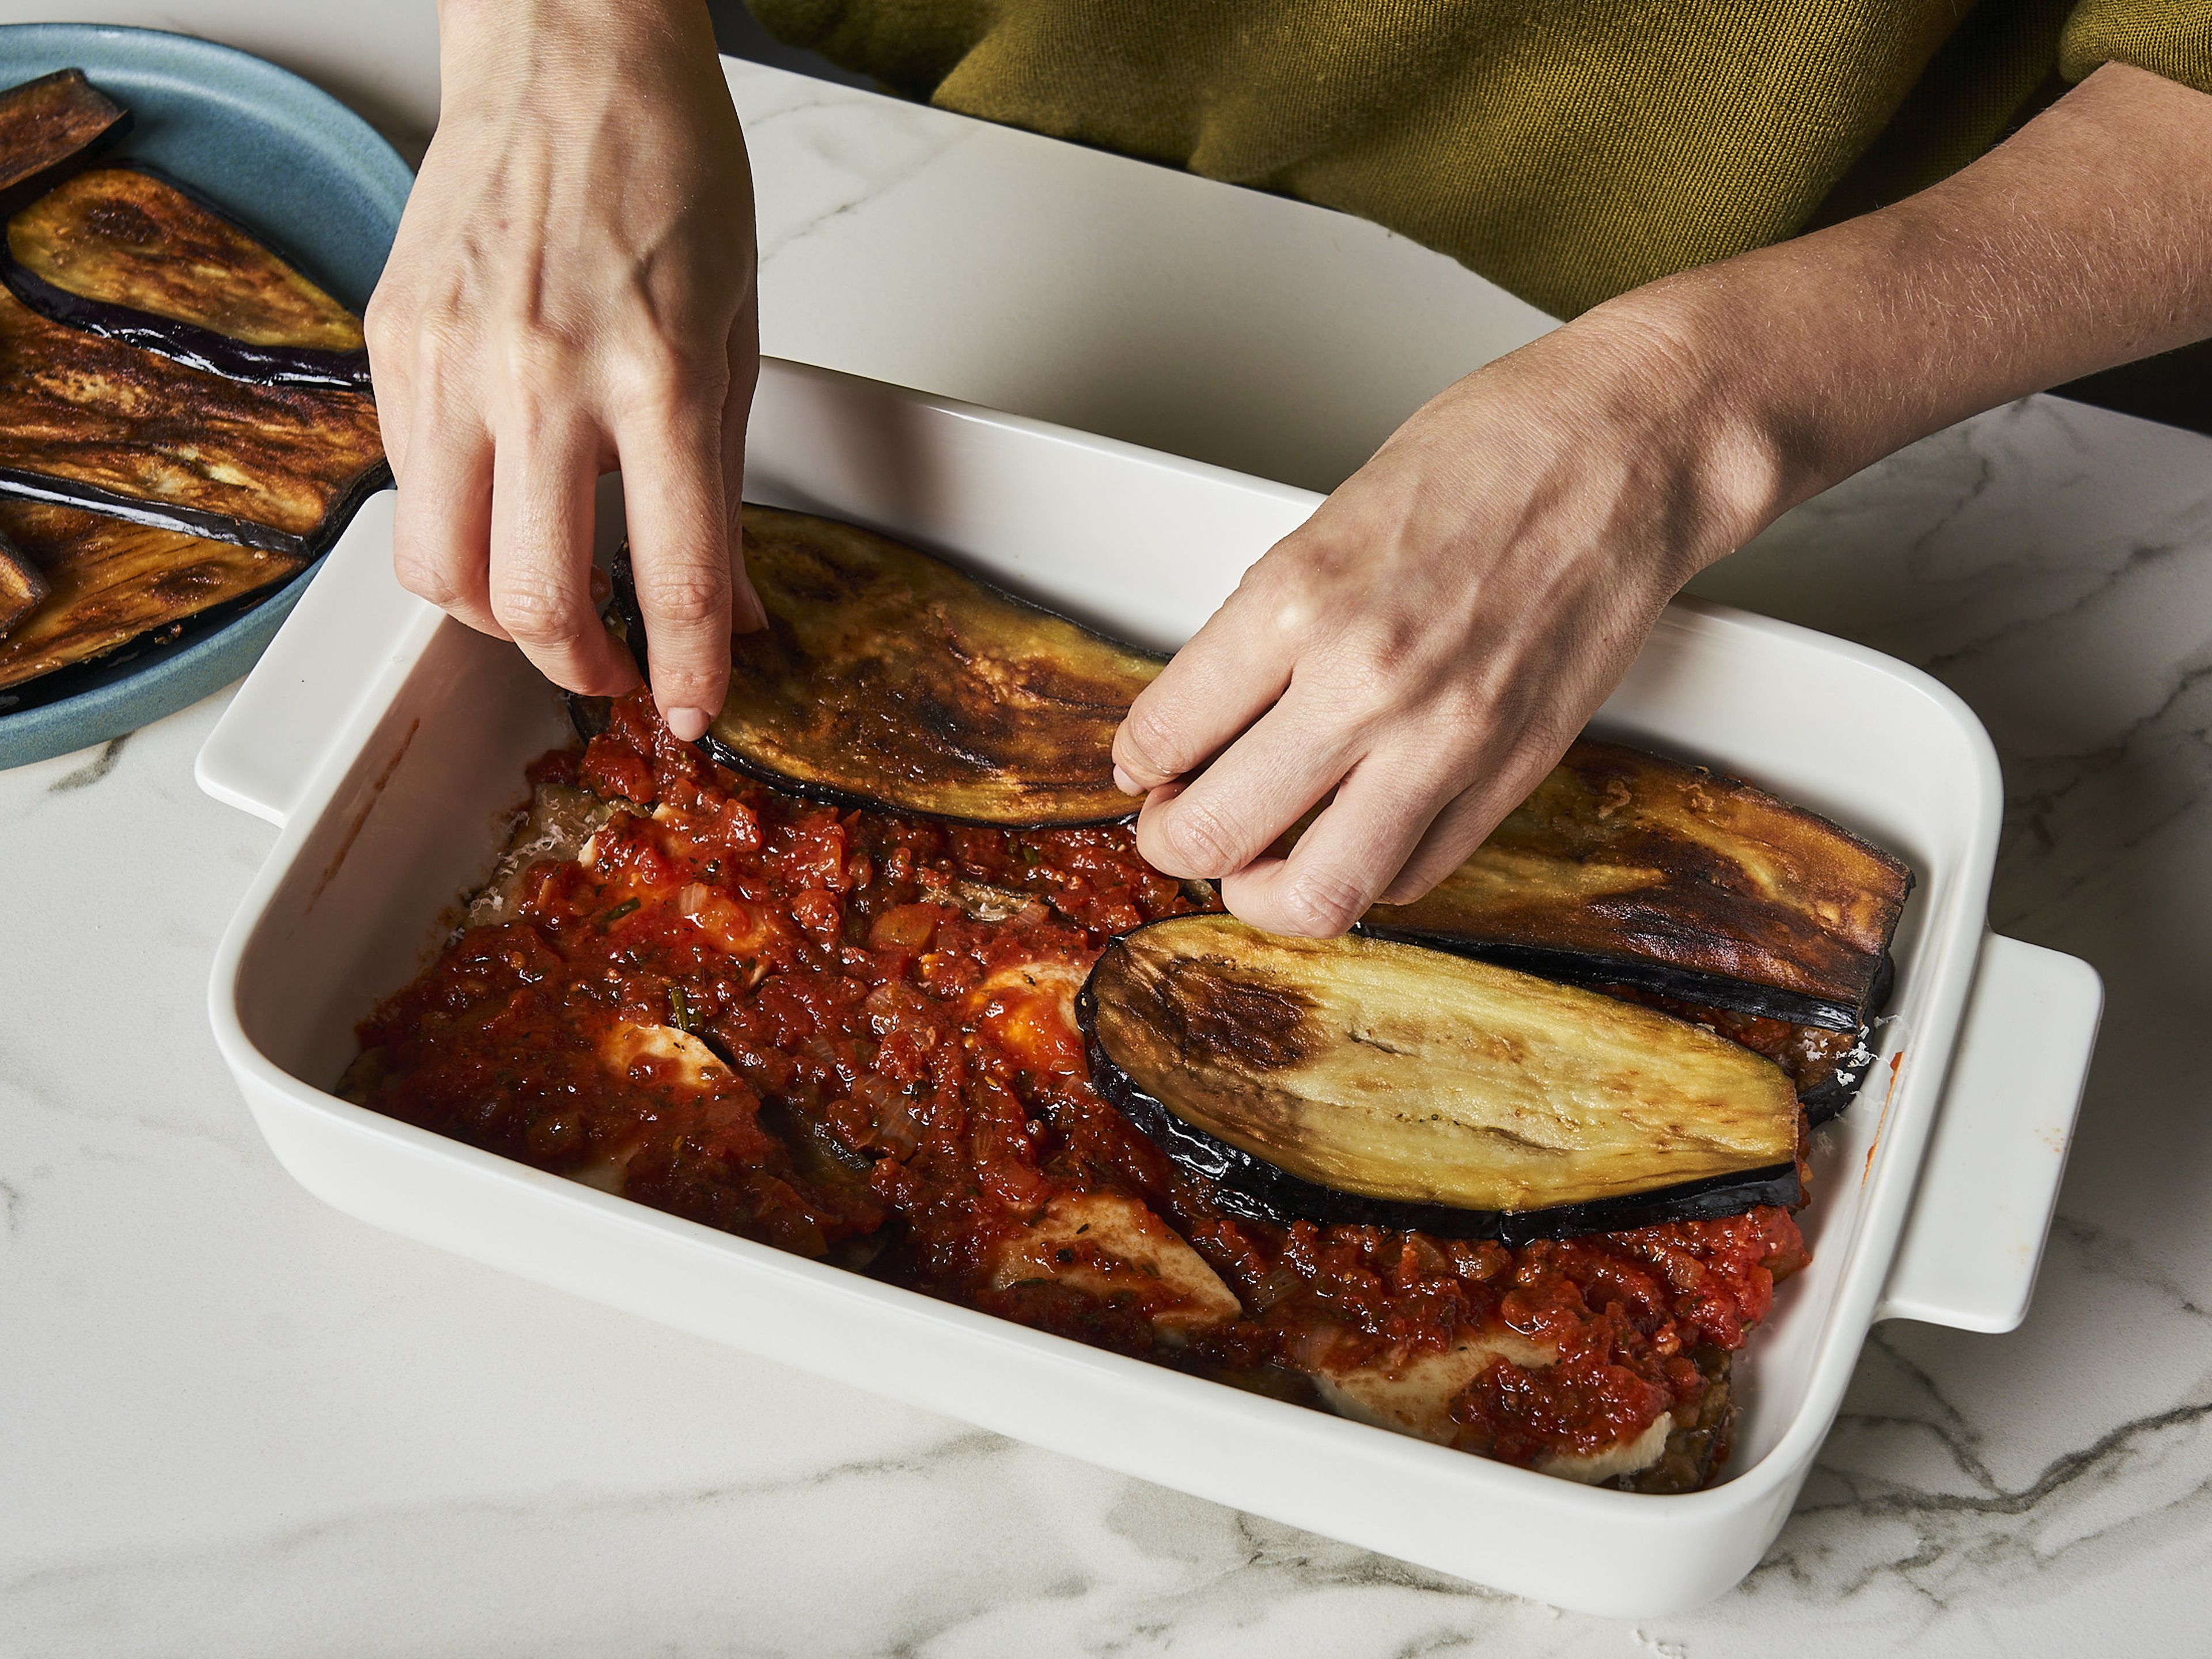 Den Backofen auf 180°C vorheizen. In einer Auflaufform Schichten mit folgender Reihenfolge erstellen: Tomatensoße, Auberginen, Mozzarella und etwas Parmesan darüber reiben. Ca. 1–2 Mal wiederholen, je nach Größe der Auflaufform.